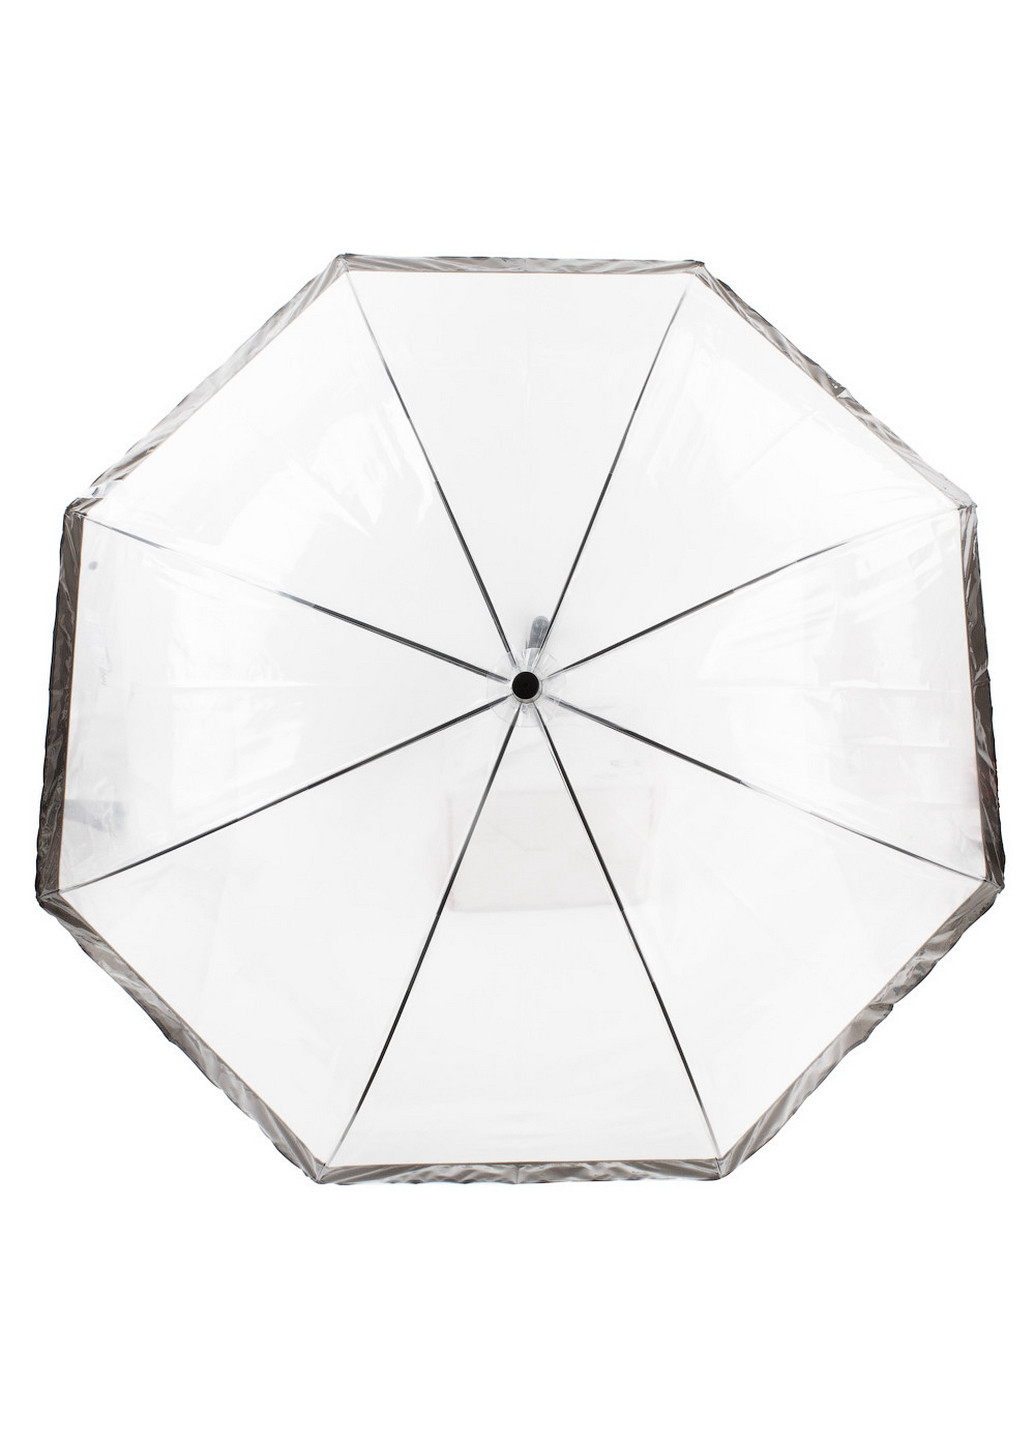 Женский зонт-трость механический 91 см Happy Rain (260329612)